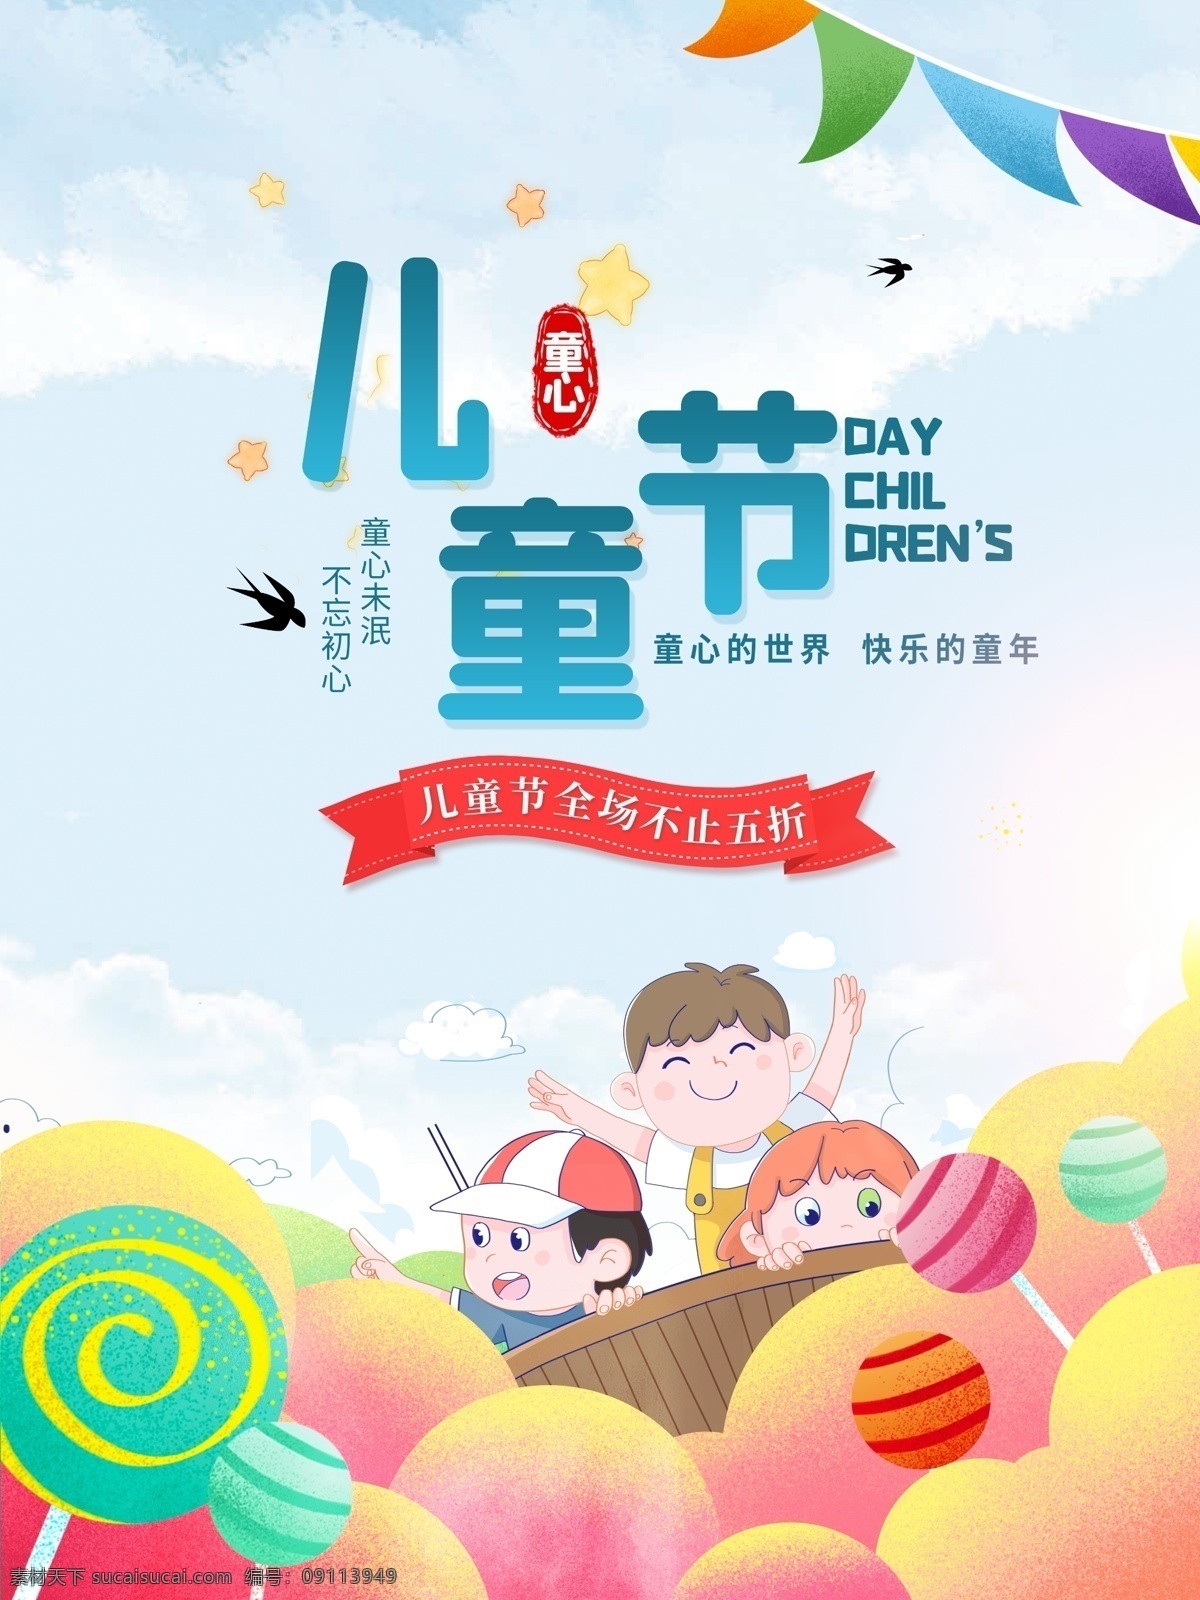 儿童节 促销 海报 六一 国际 孩子 棒棒糖 玩具 零食 彩虹 快乐 童心 节日 小朋友 宣传海报 专业